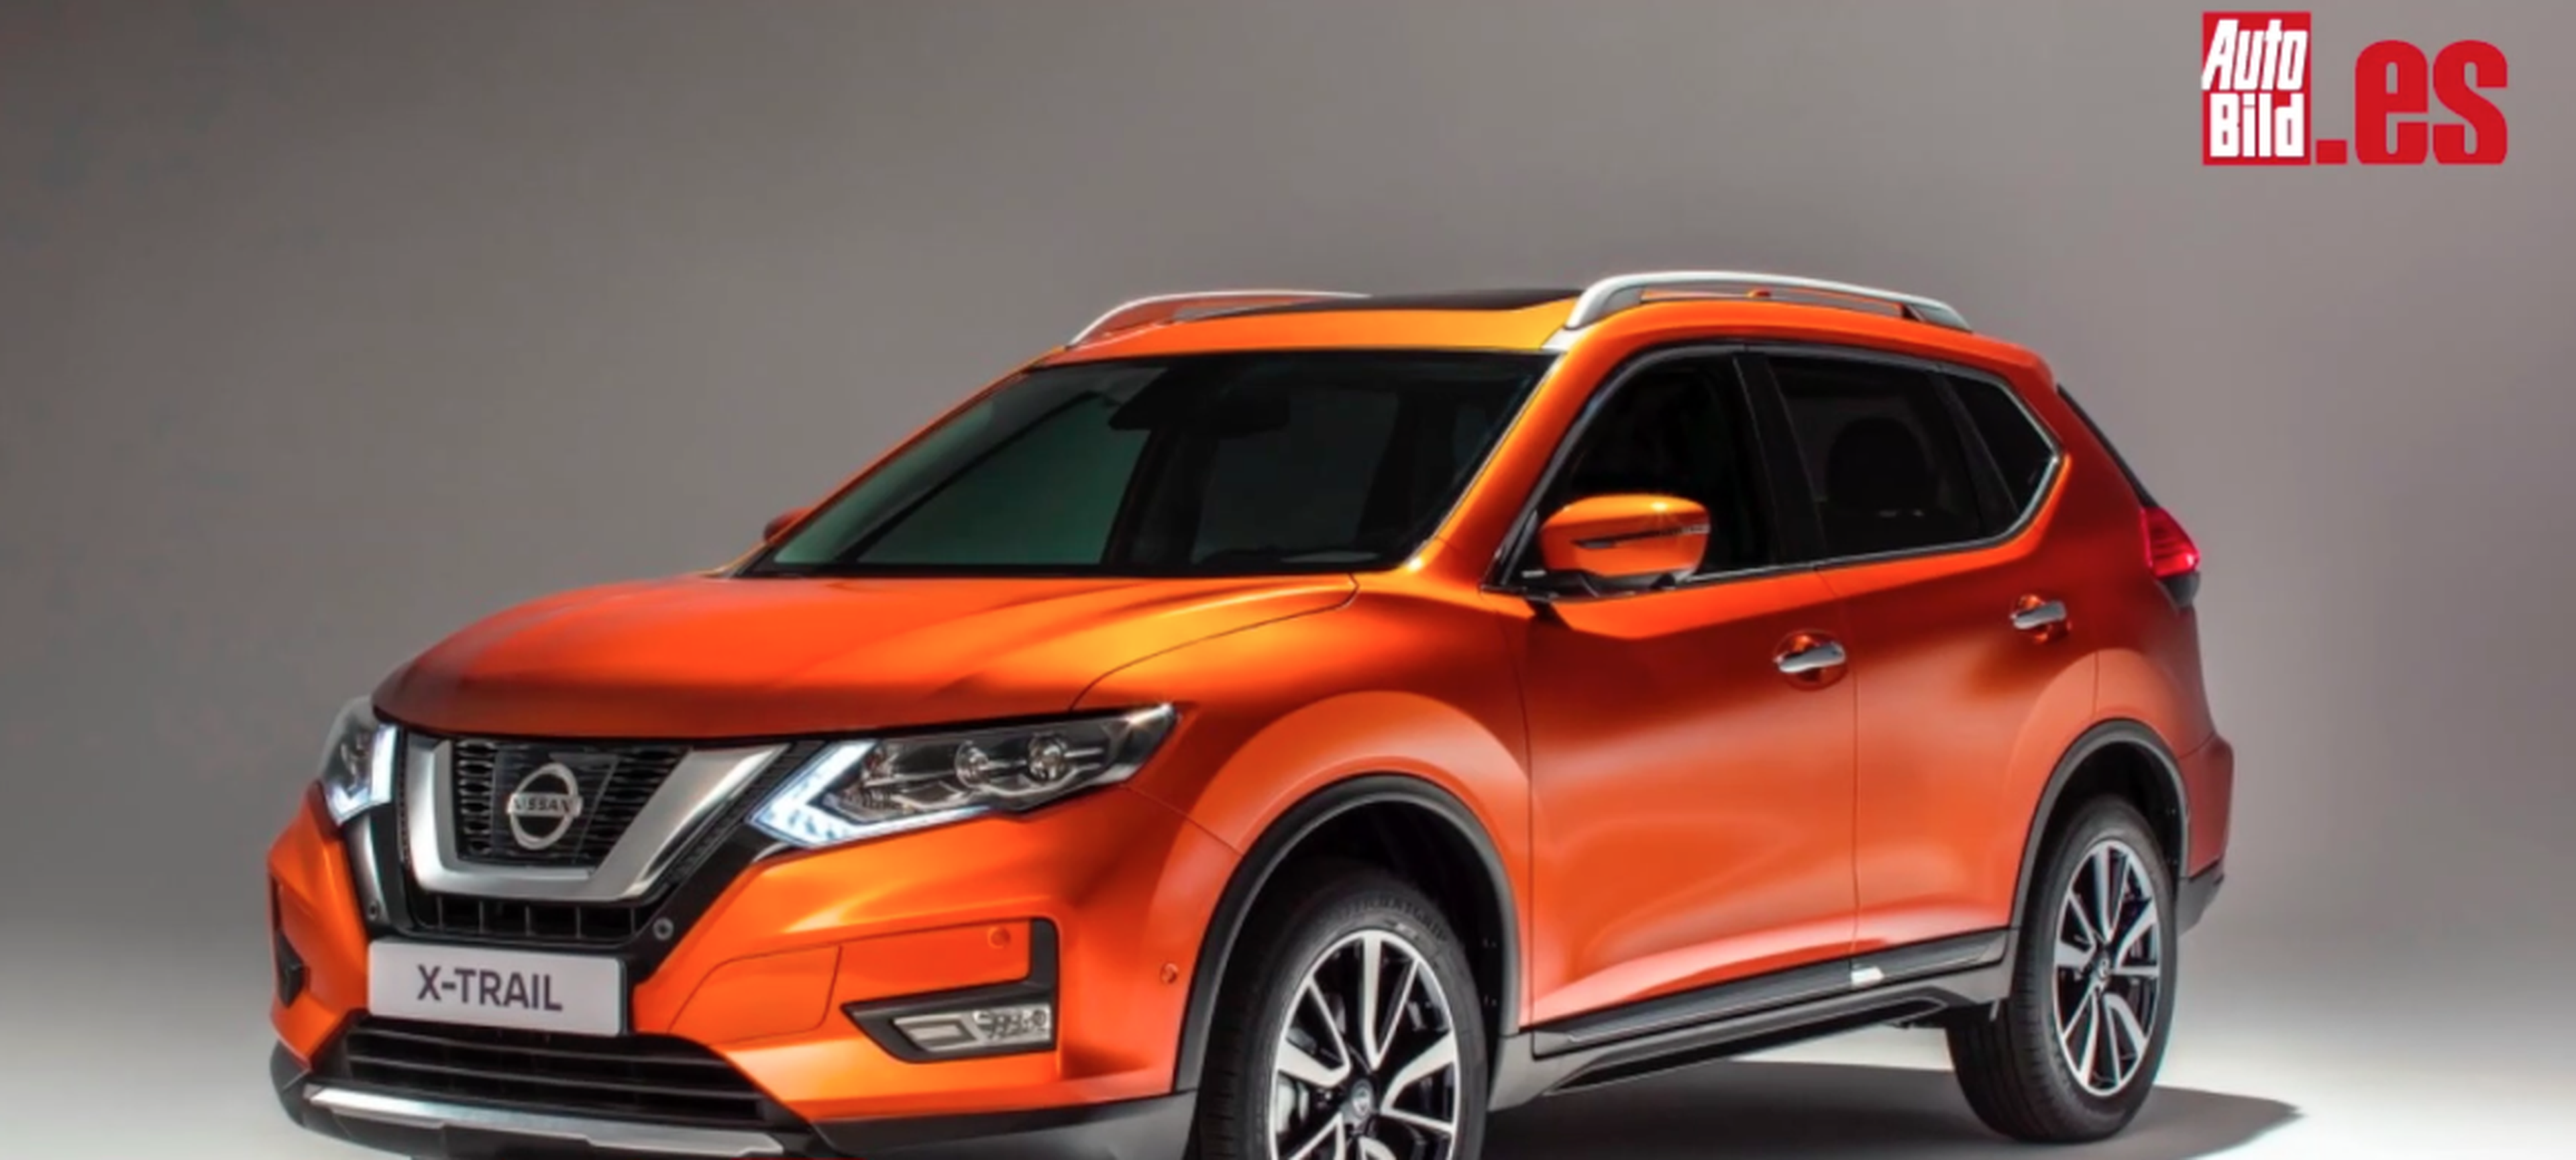 VÍDEO: Nissan X-Trail 2017, mira cómo lo han actualizado